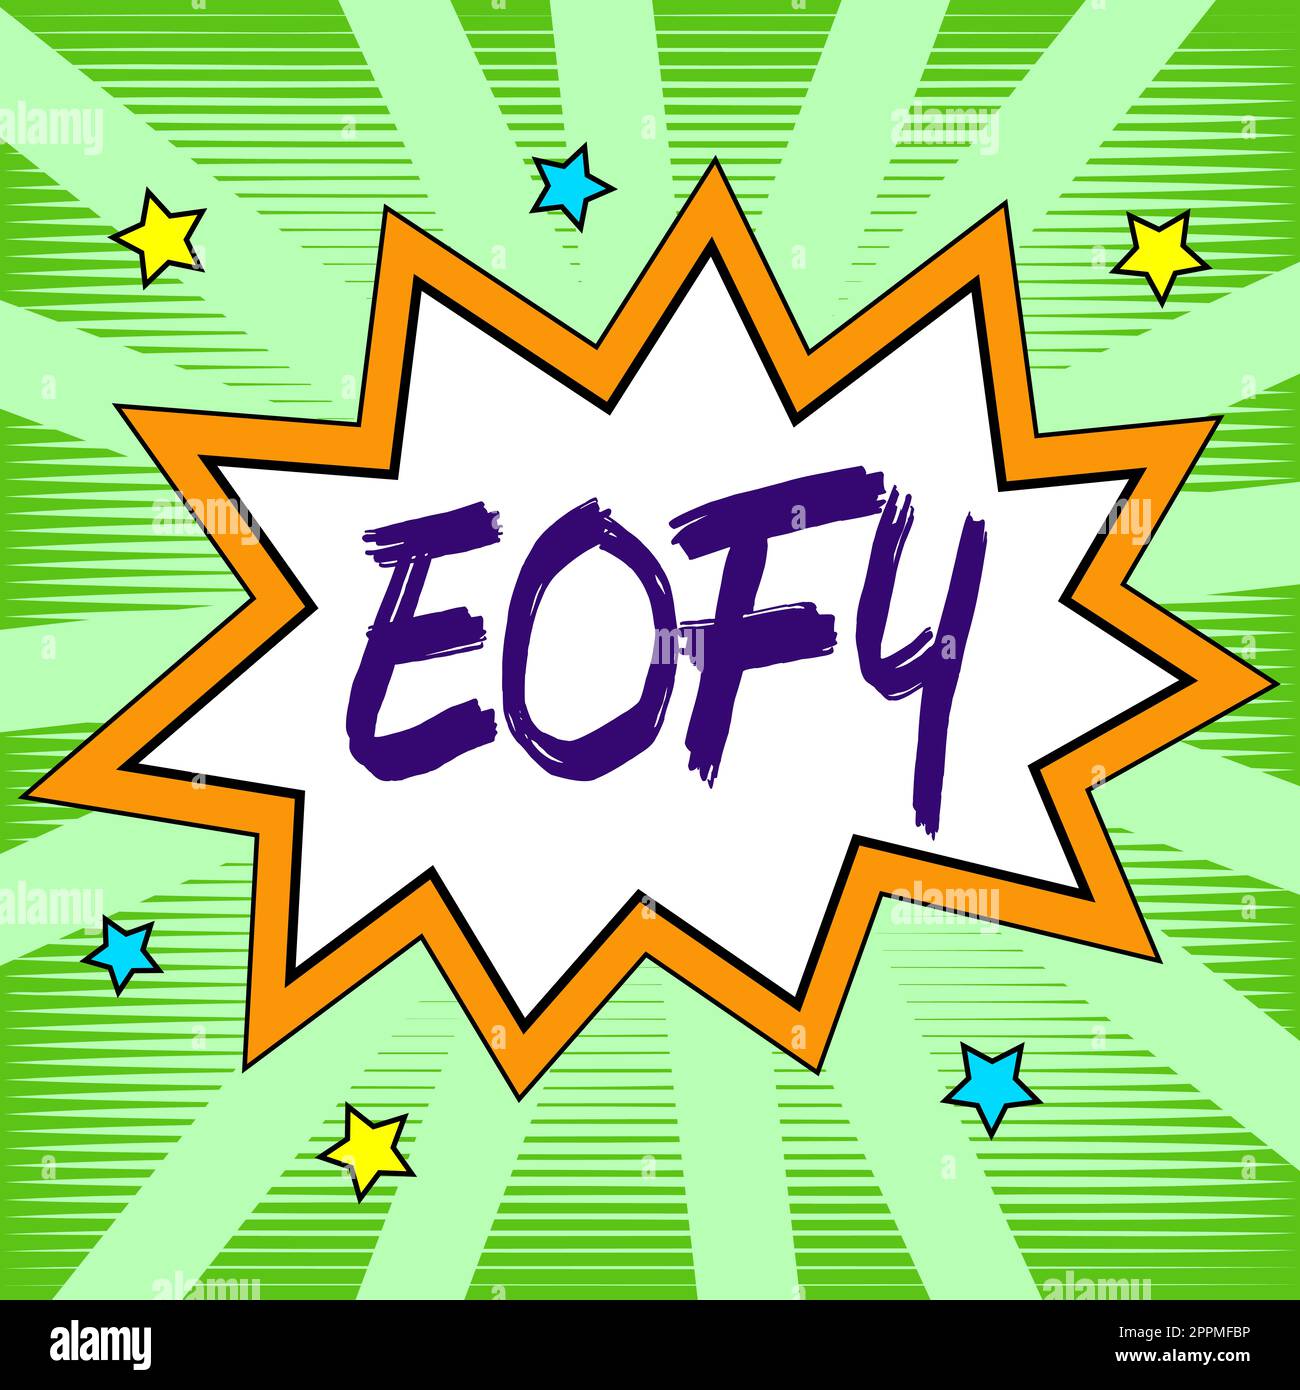 Texte d'écriture Eofy. Mot écrit sur une méga vente tenue à la fin d'un exercice financier Banque D'Images